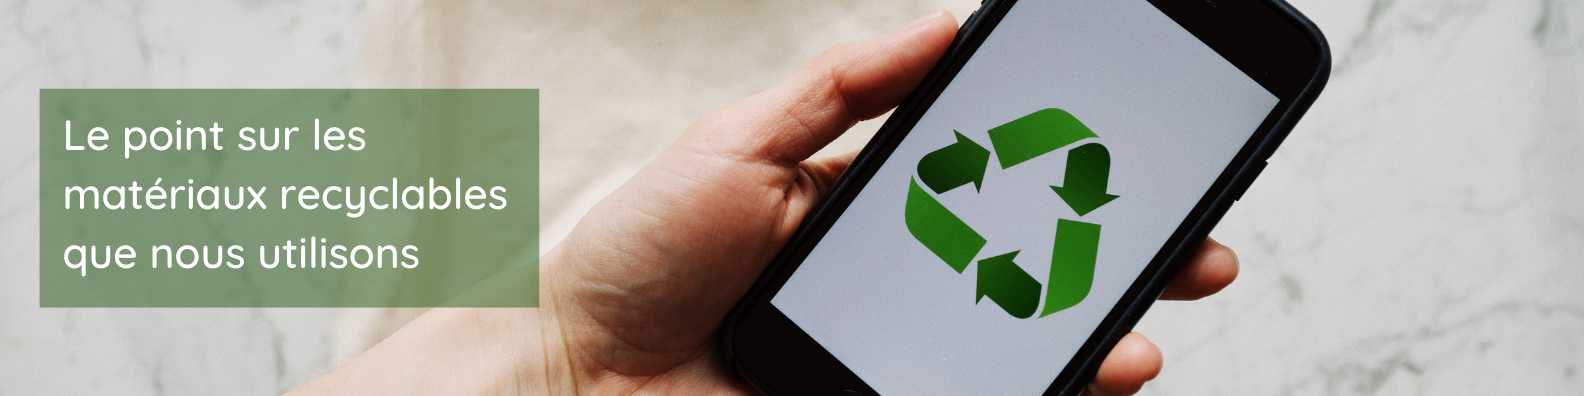 neolid - bannière - Le point sur les matériaux recyclables que nous utilisons